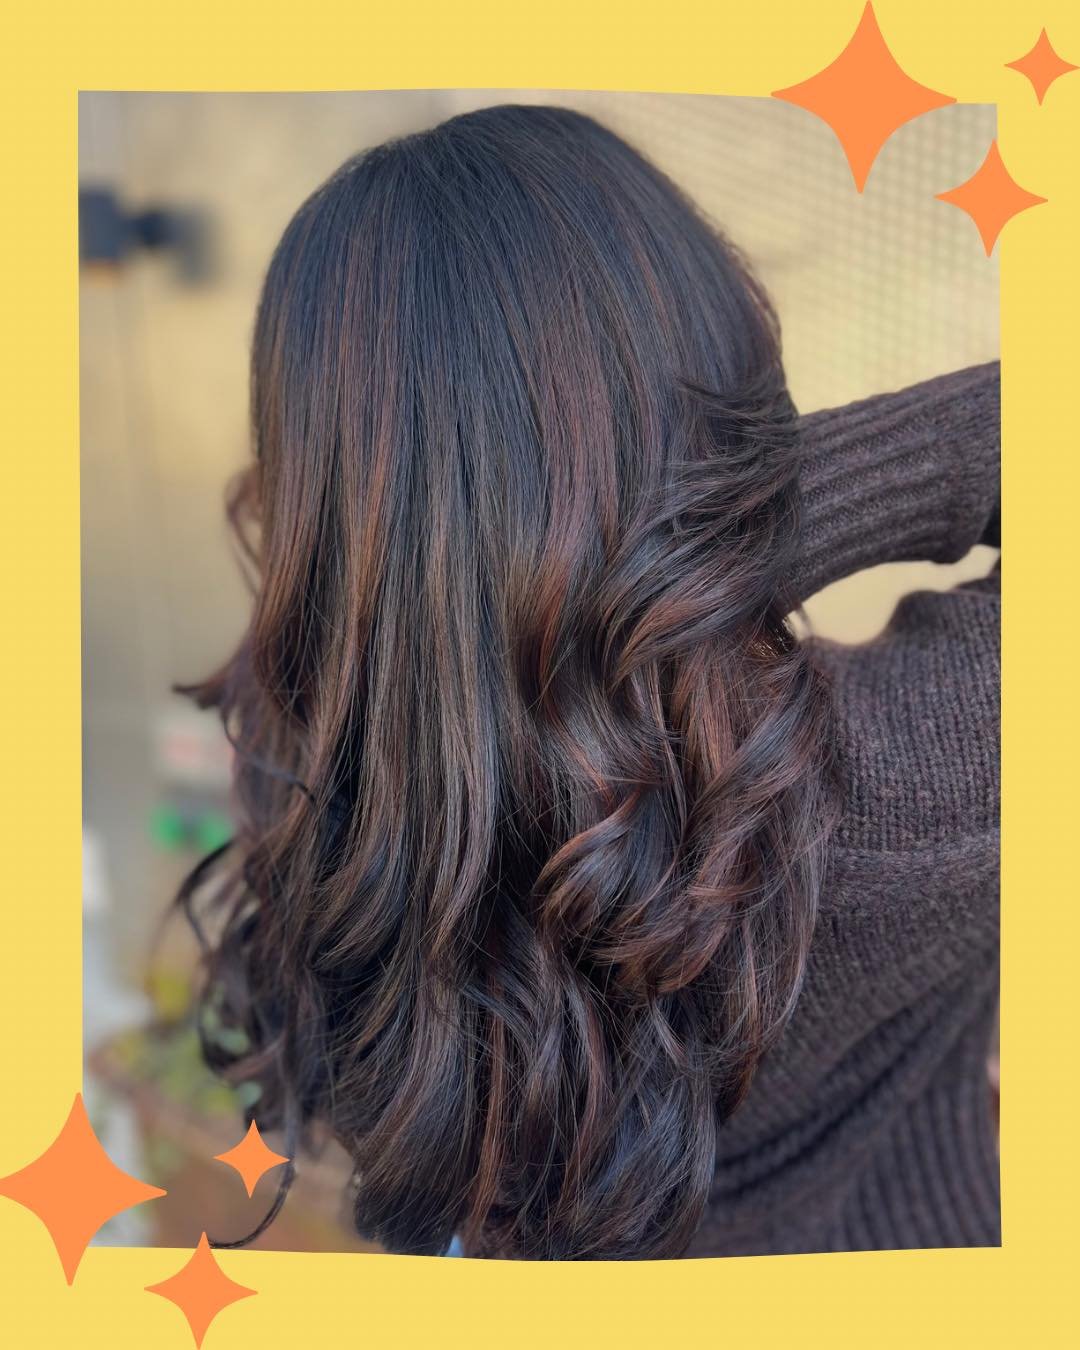 Brunette Balayge by @heyhaleymay!! 😍🔥✨
&bull;
&bull;
&bull;
#avedahaircut #avedahairsalon #avedahairproducts #avedahair #avedavegancolor #avedastylist #hairtransformationspecialist #hairstyles #hair #hairgoals #haircut #hairdresser #hairstylist